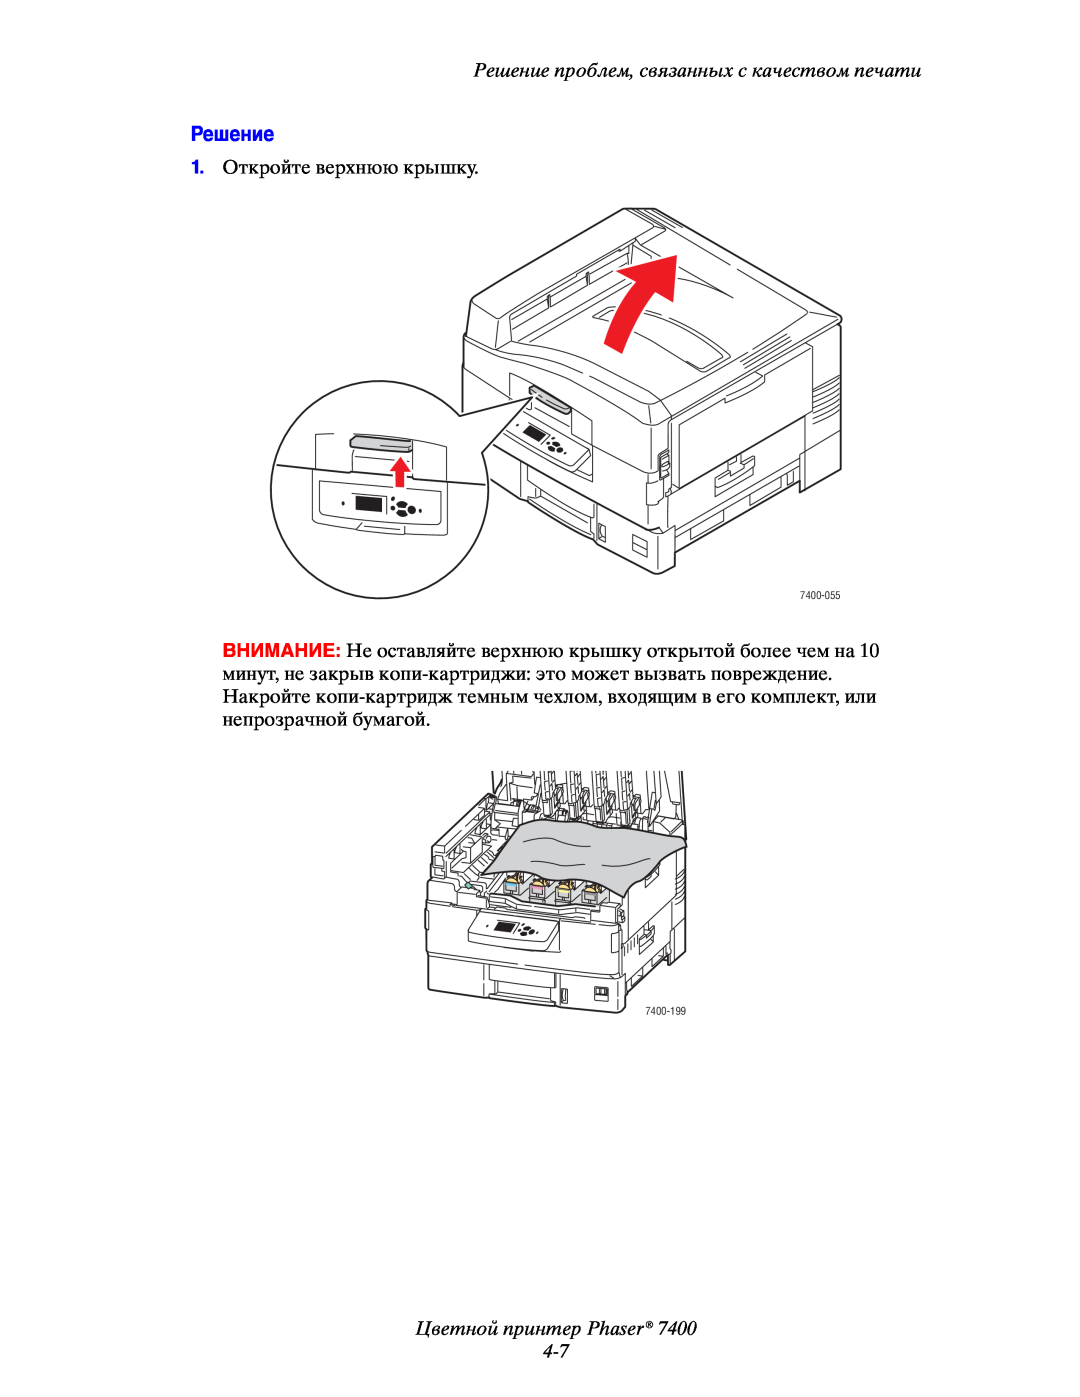 Xerox 7400 manual Цветной принтер Phaser 4-7, Решение проблем, связанных с качеством печати 